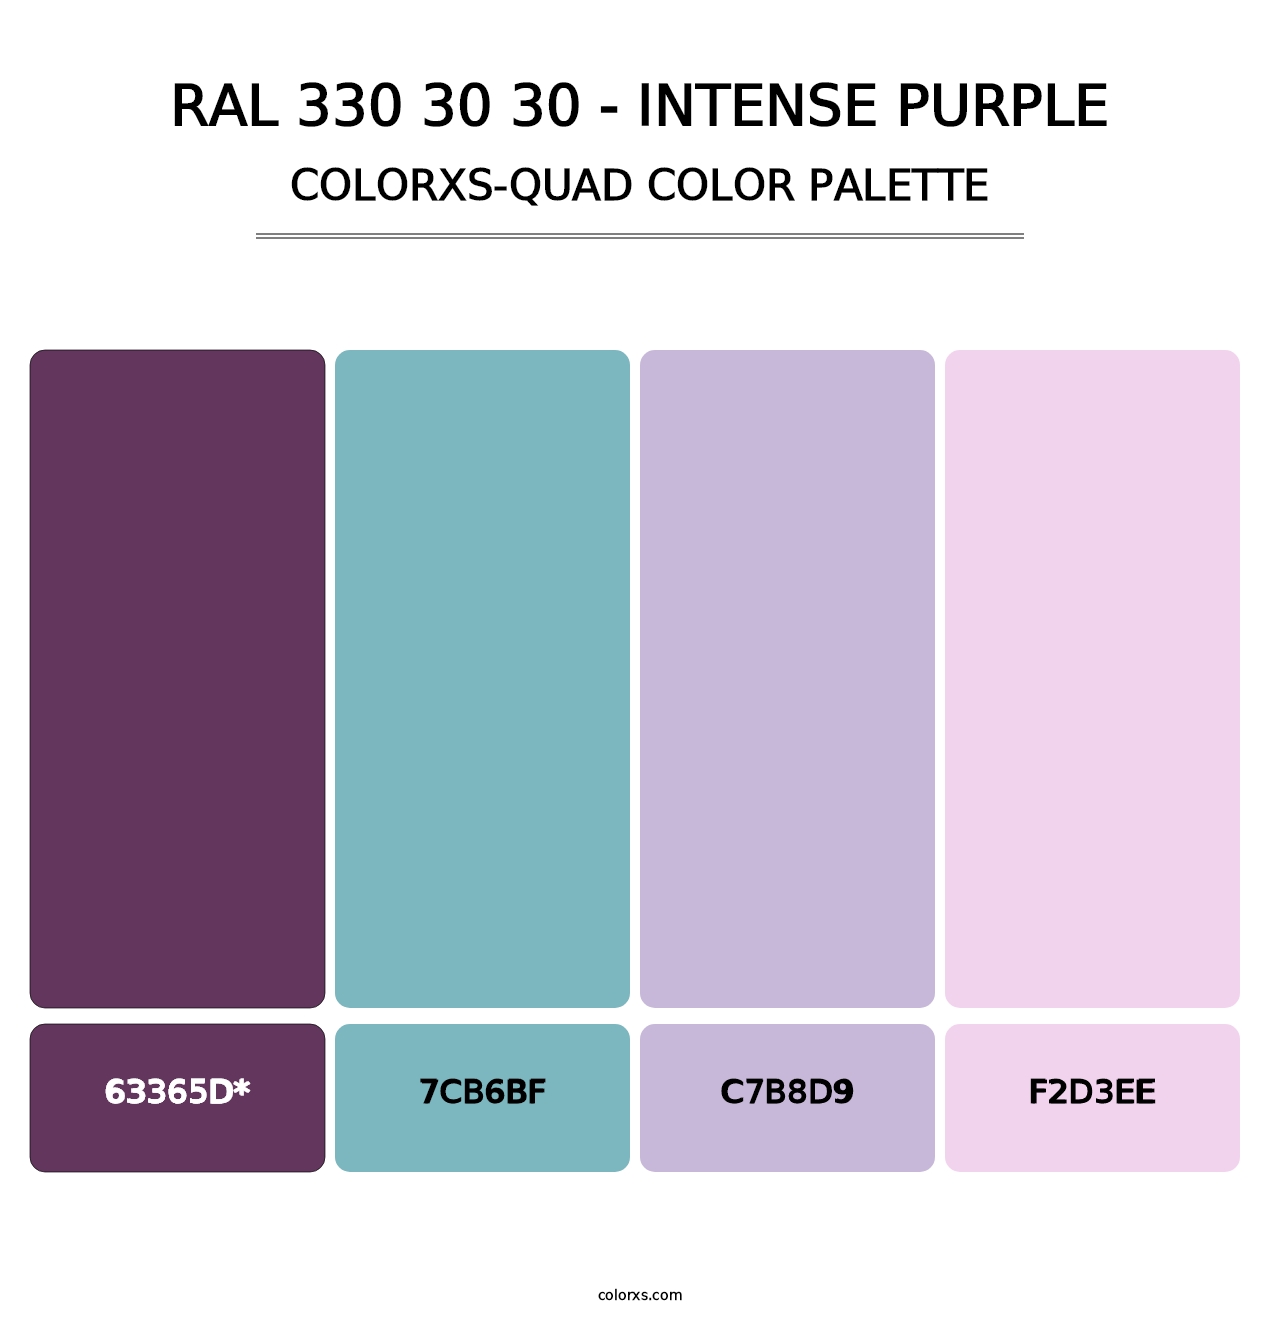 RAL 330 30 30 - Intense Purple - Colorxs Quad Palette